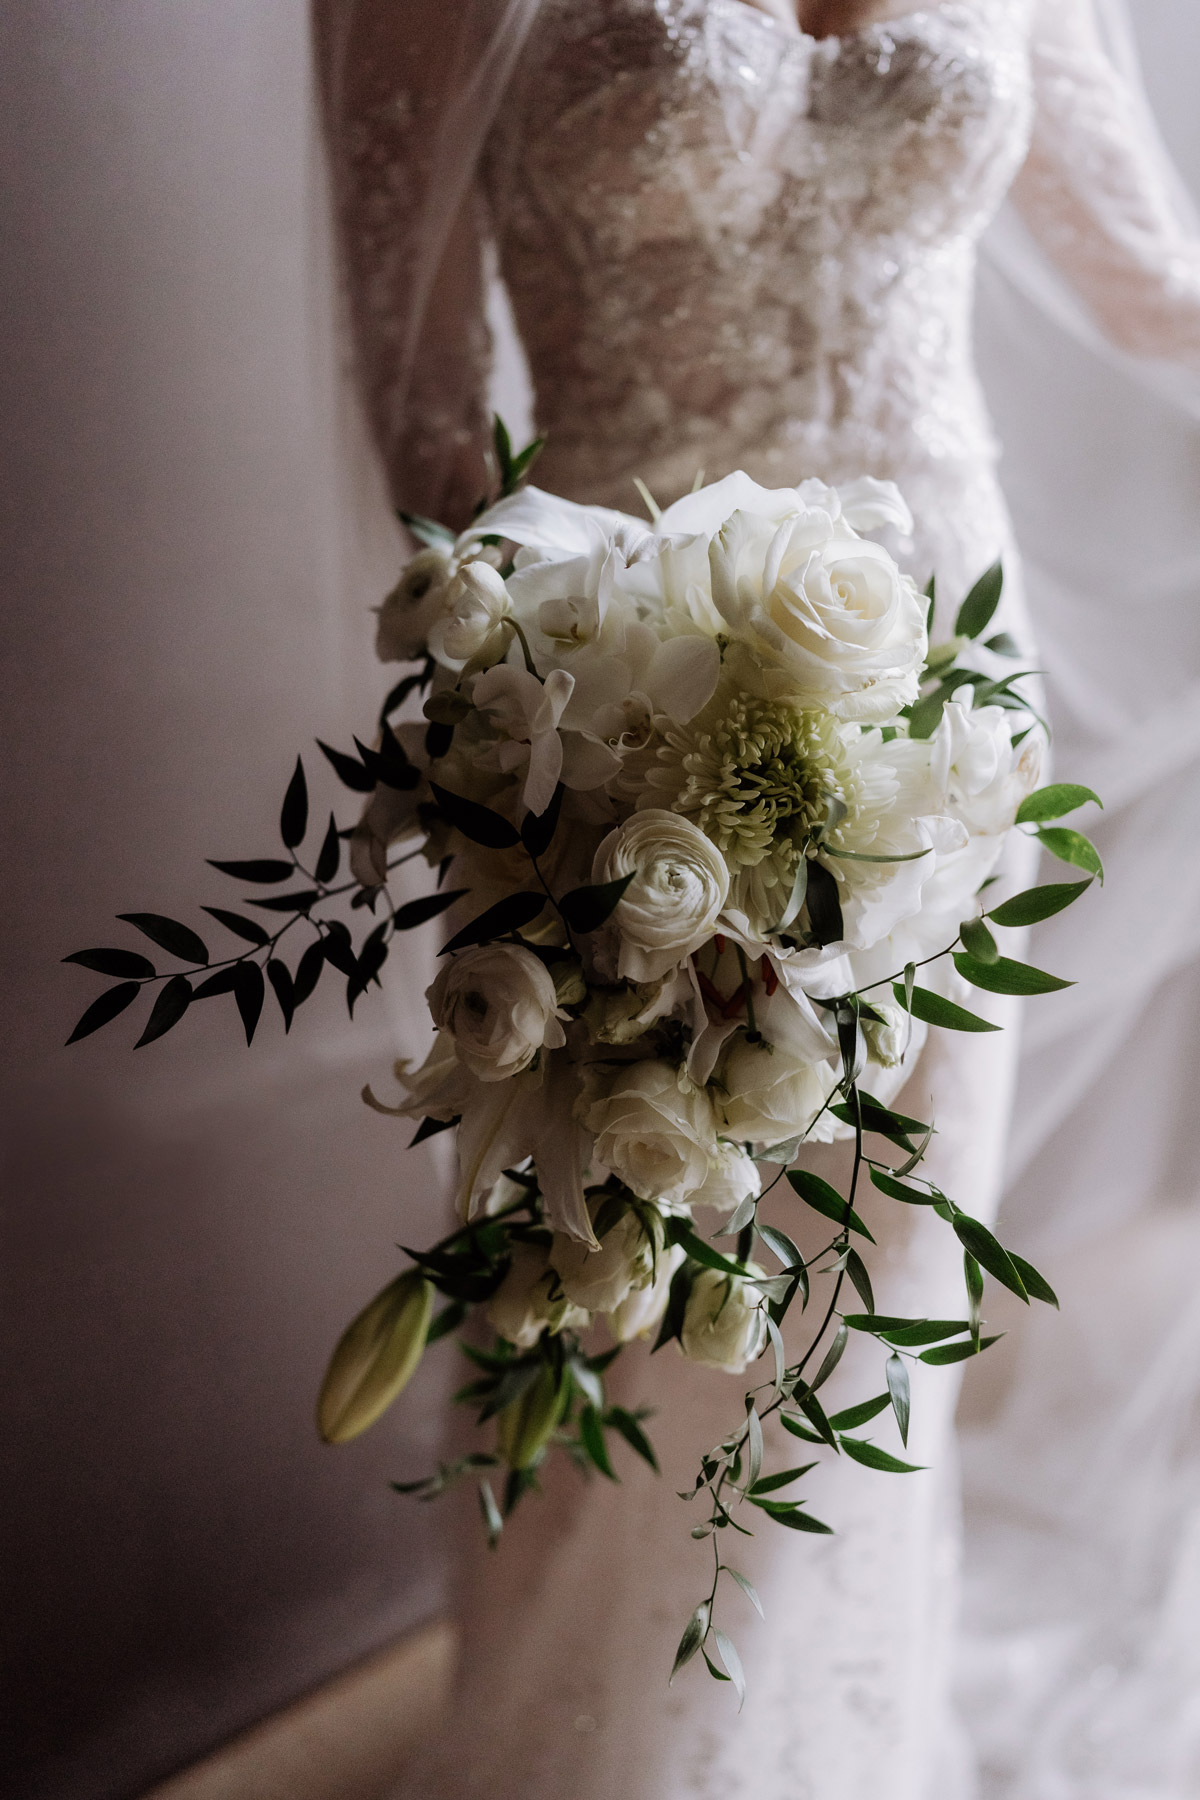 Brautstrauß in Tropfenform in Weiß und Grün mit Rosen, Ranunkeln und Lilien © www.hochzeitslicht.de #hochzeitslicht